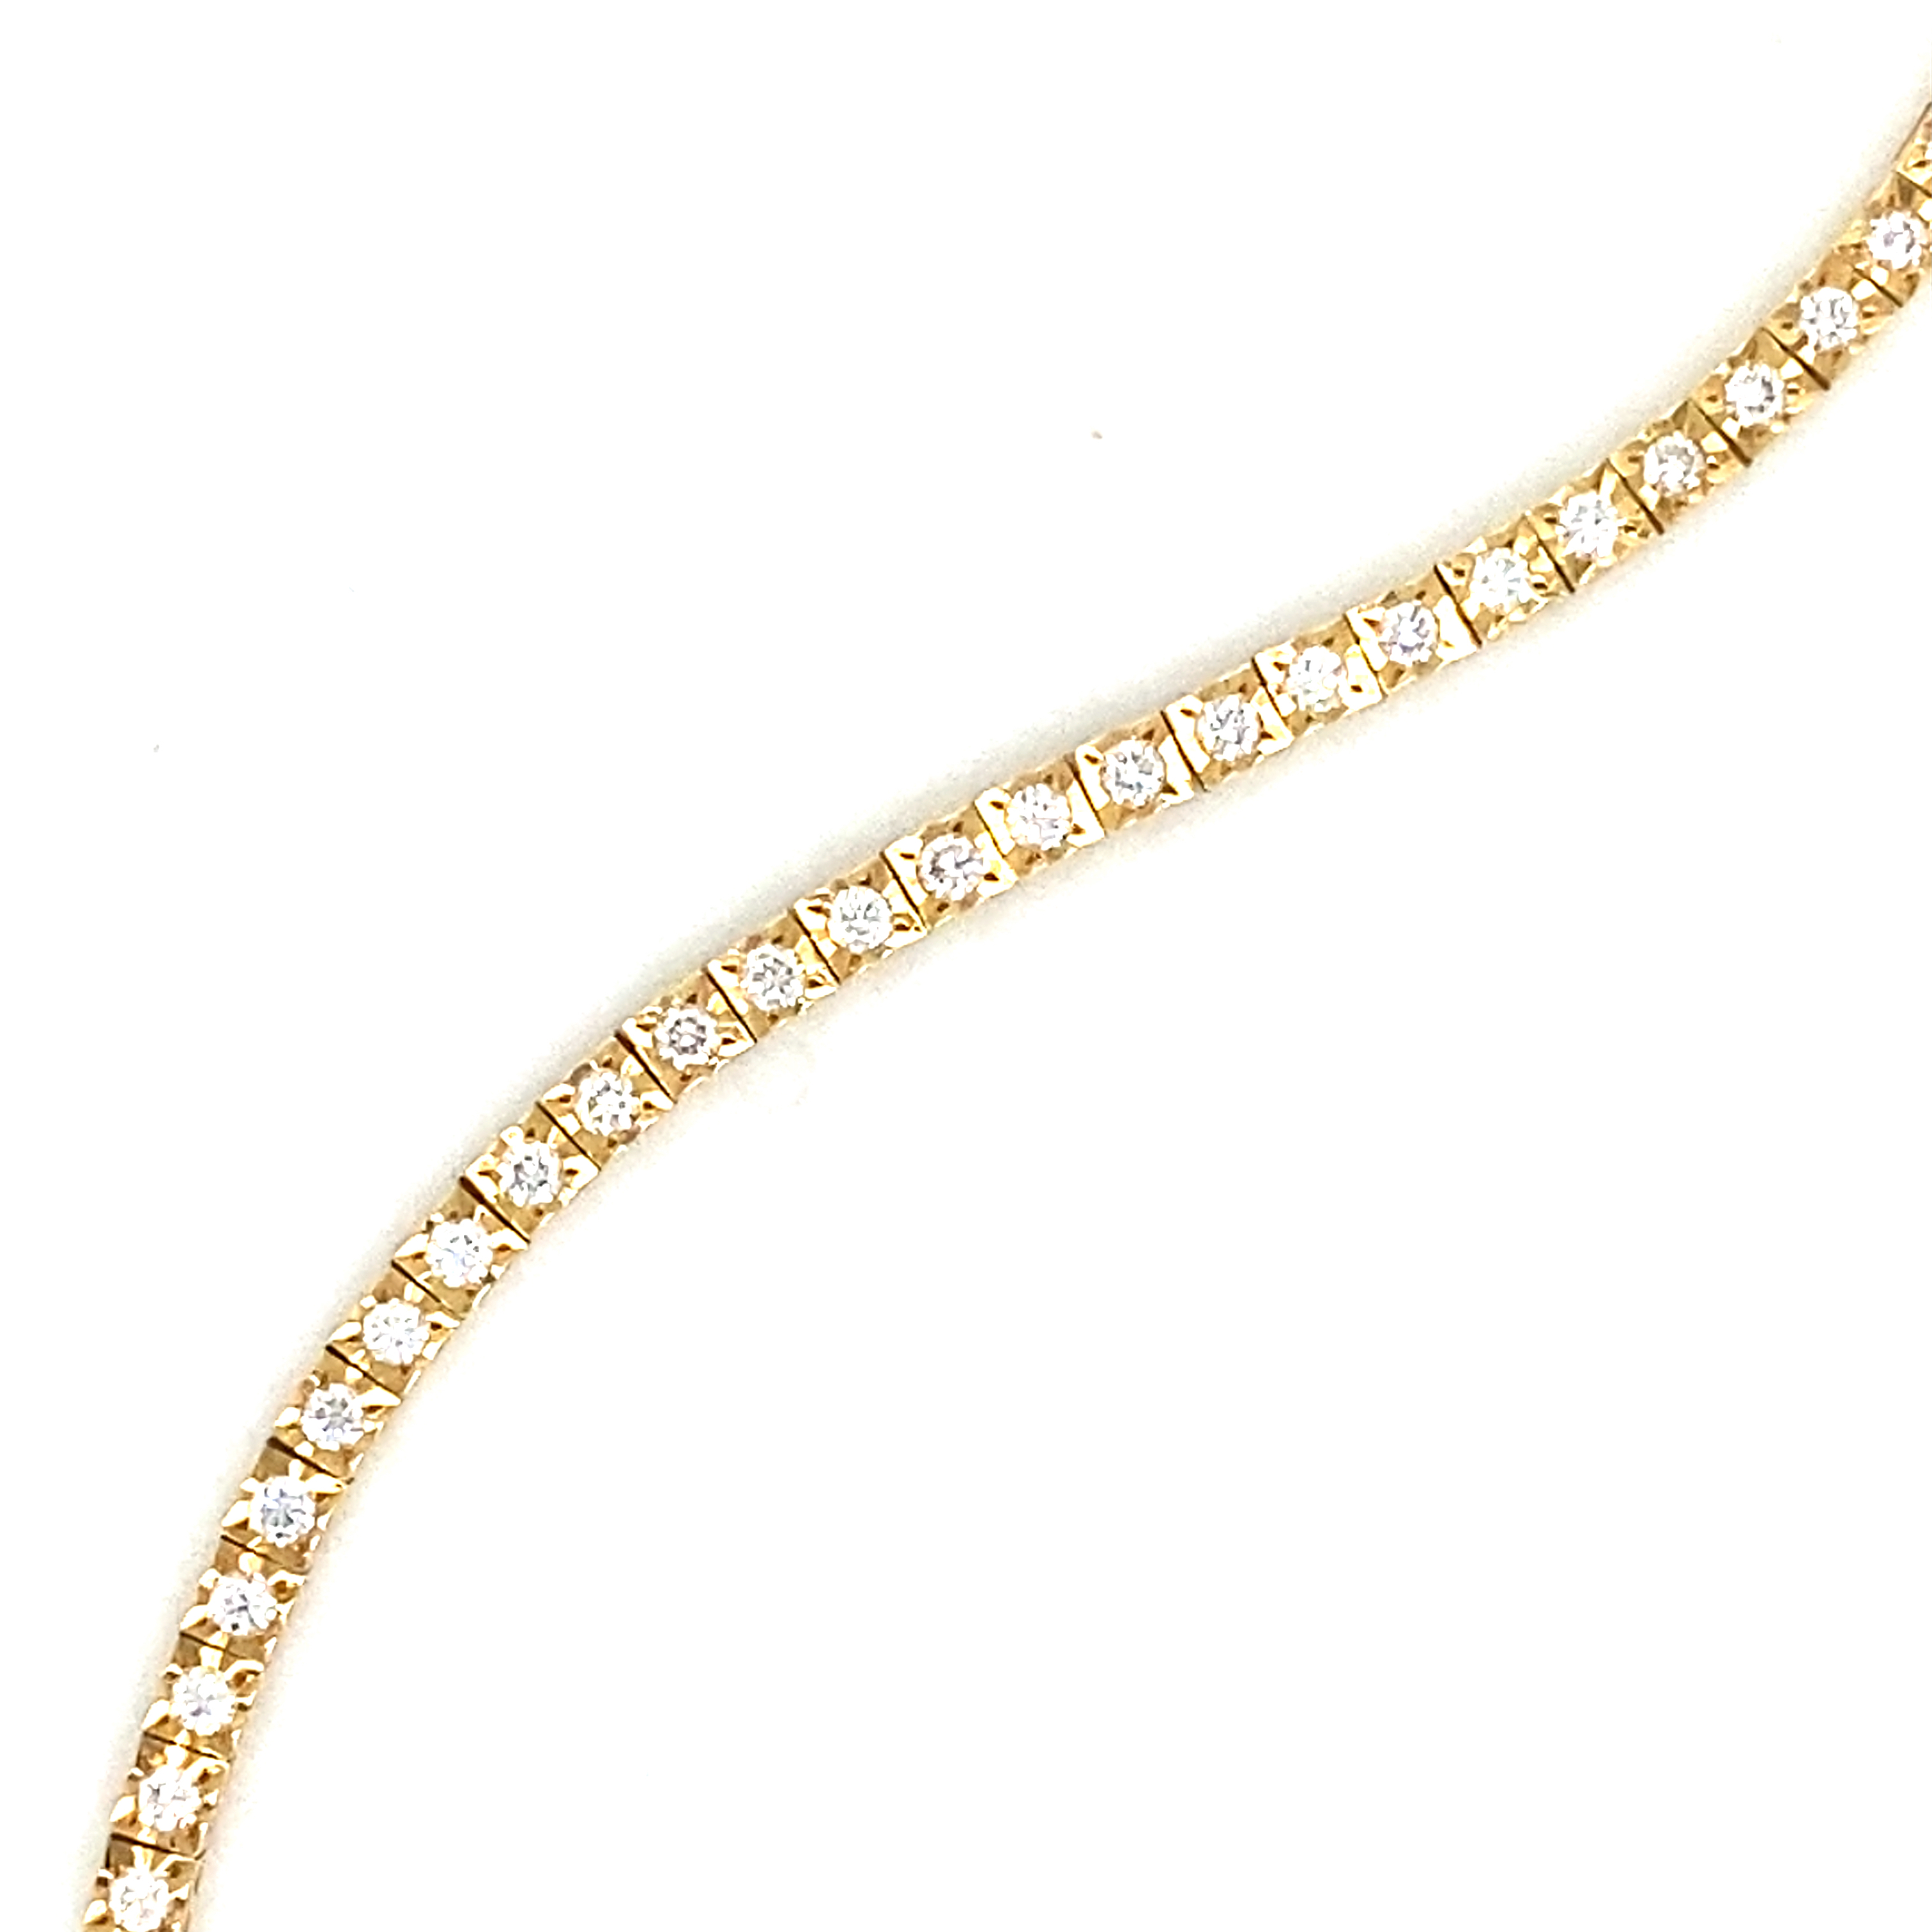 18 Carat Yellow Gold and Diamond Line Bracelet 1.00 Carats